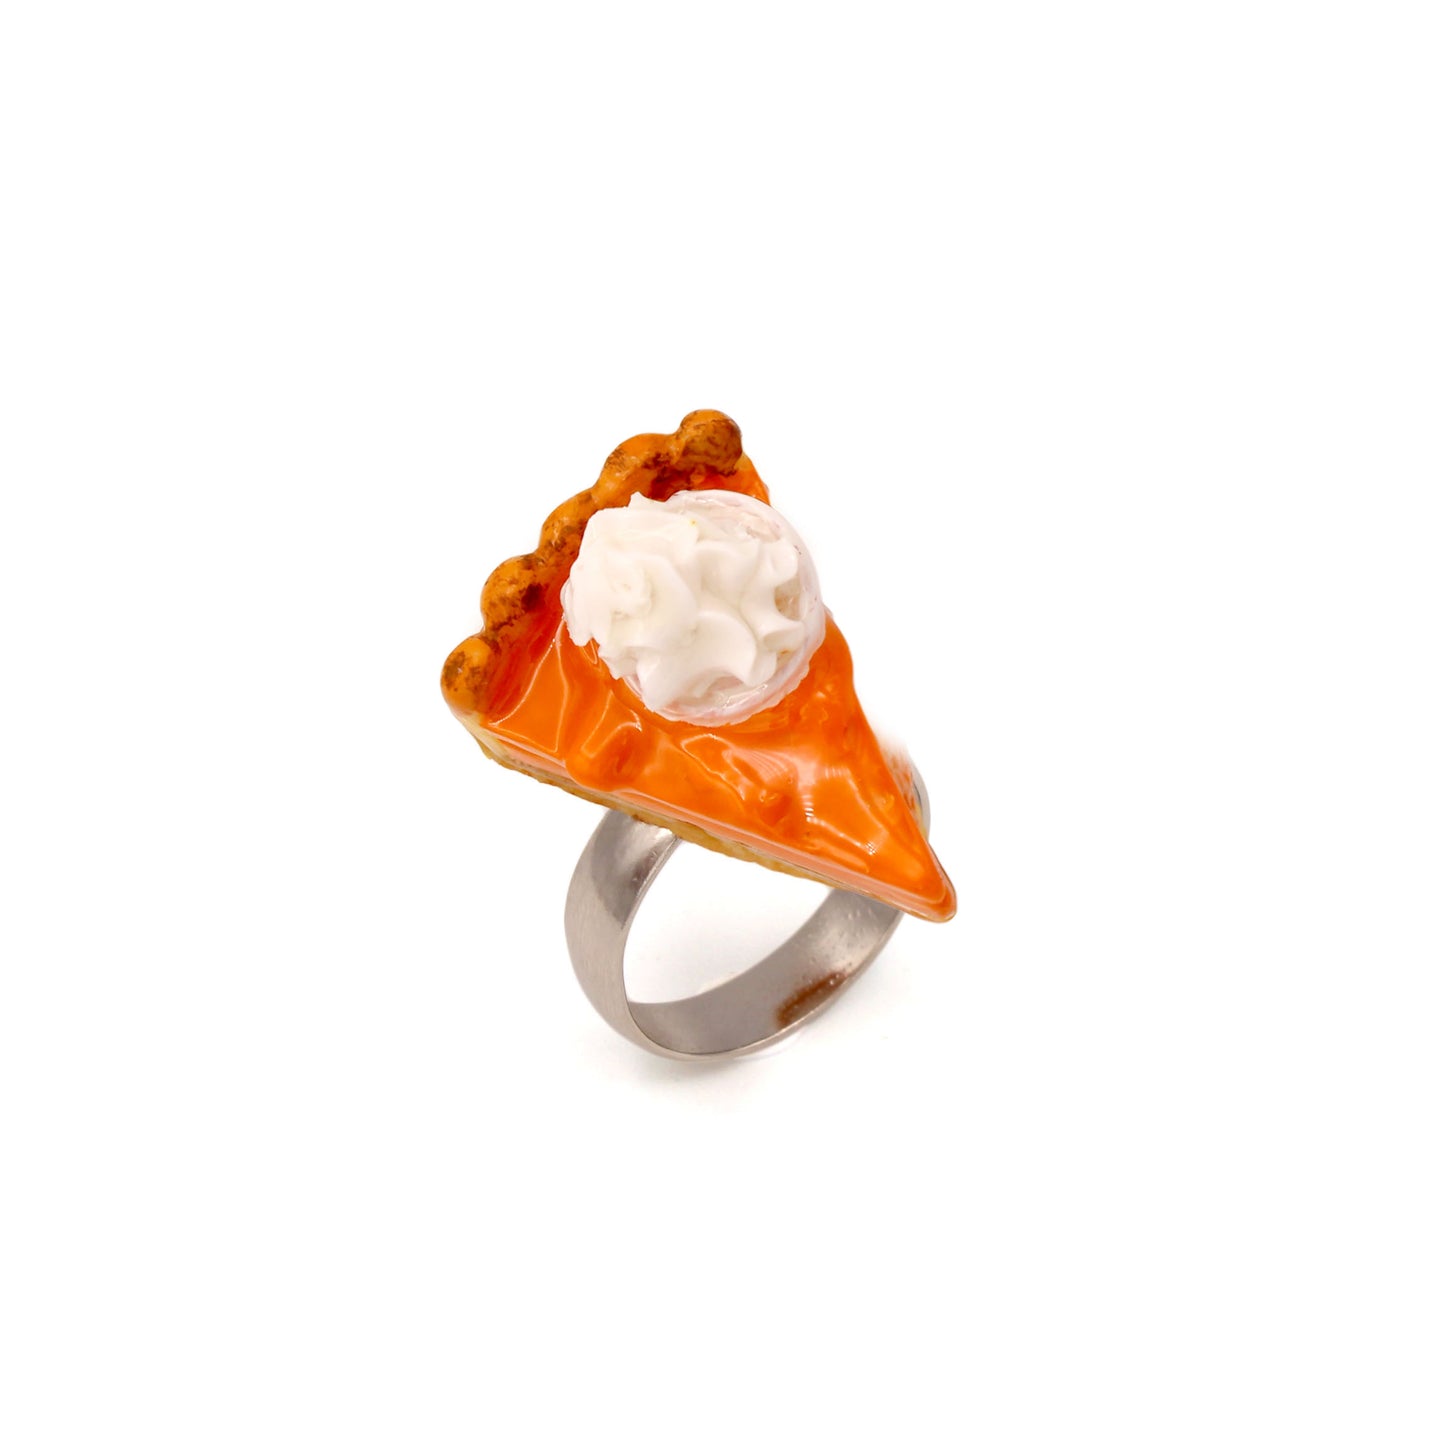 Autumn Statement Ring Pumpkin Pie Adjustable Size Fatally Feminine Designs